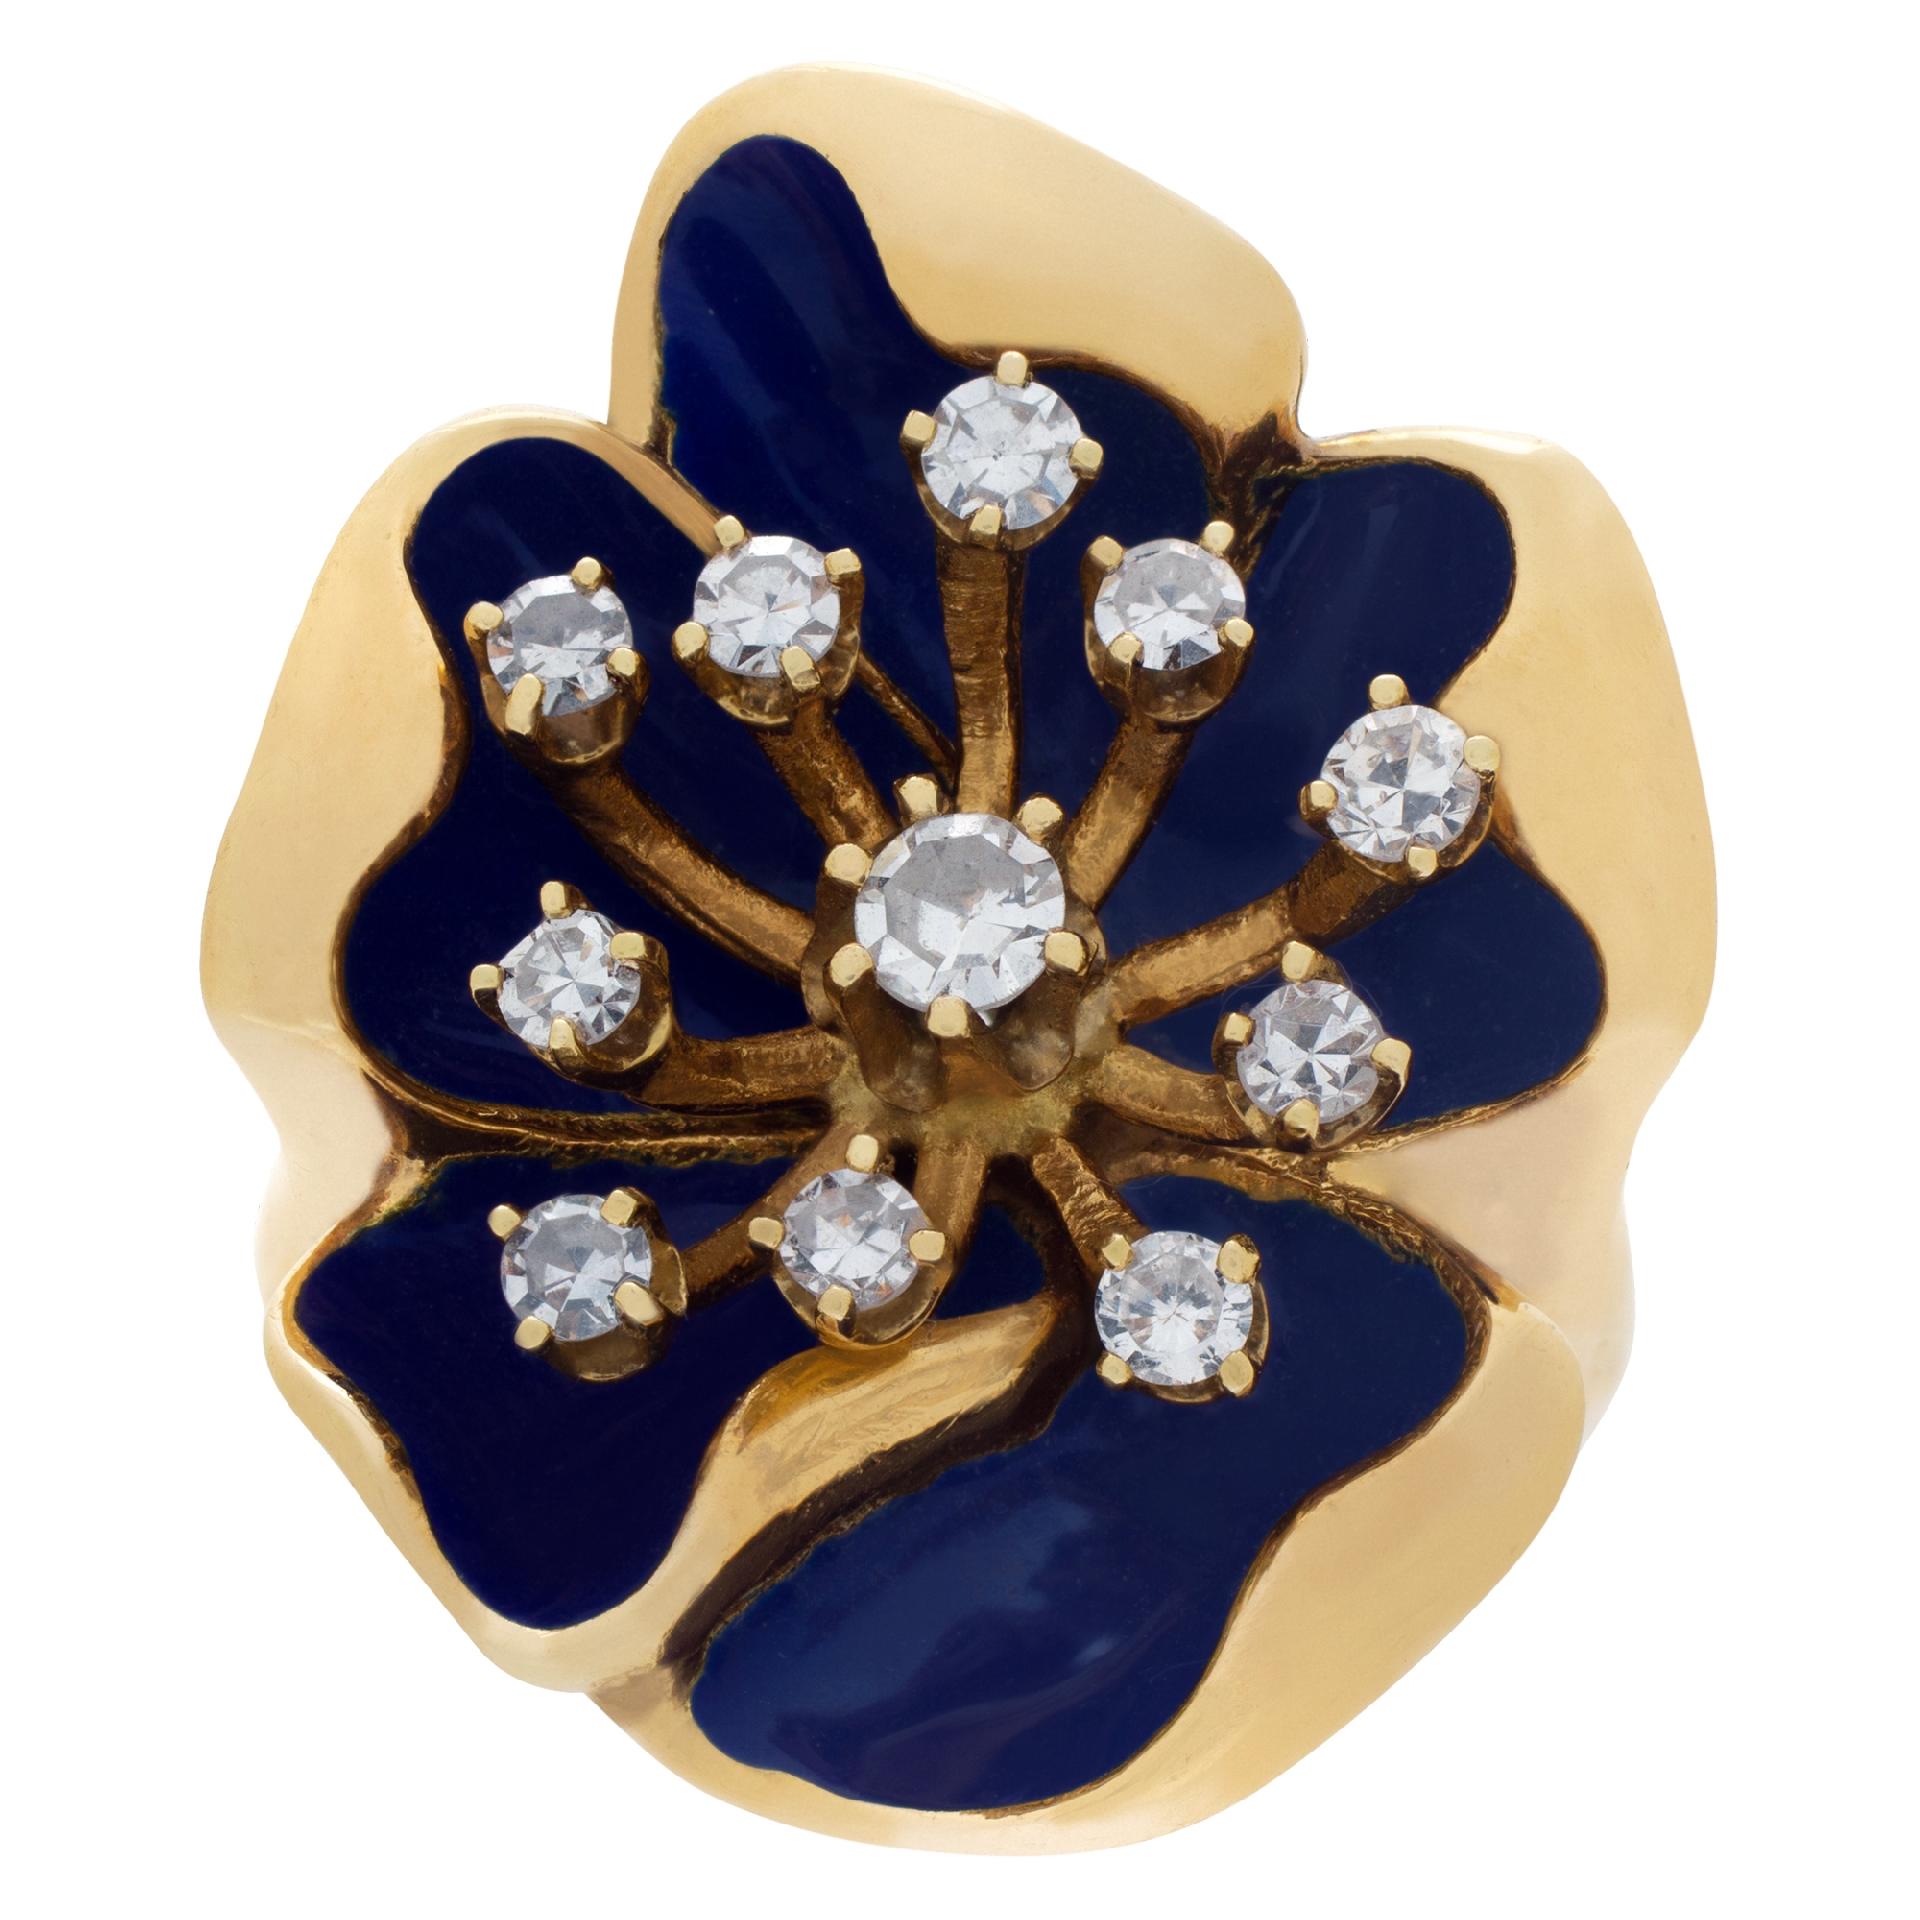 PRIX DE VENTE ESTIMÉ : 2 640,00   VOTRE PRIX : $1,900.00
Bague en forme de fleur avec émail bleu et 0,30 carat de diamants en 14k. 
L'anneau mesure 0,95